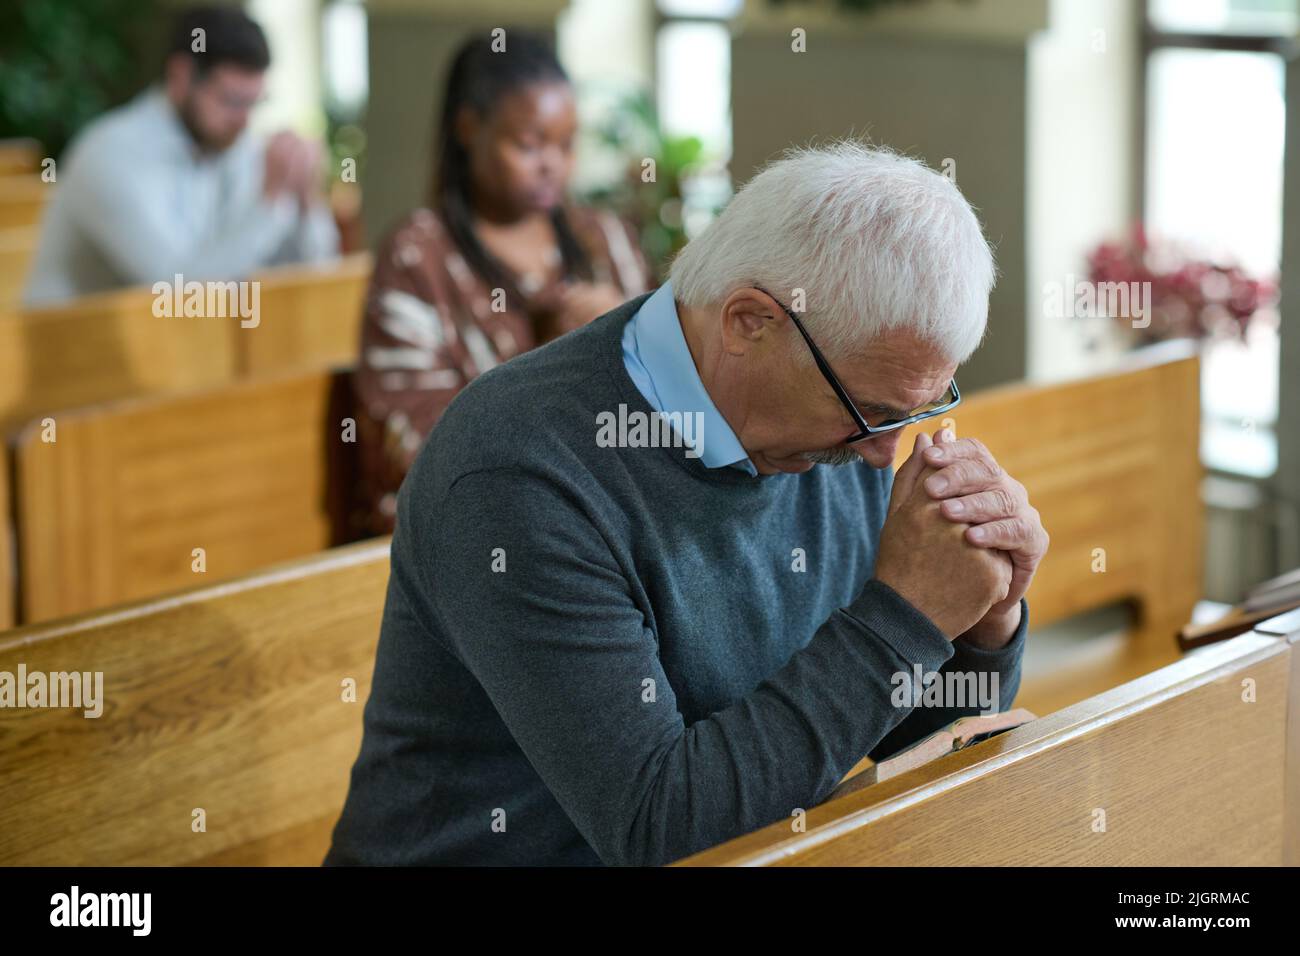 Reifer Mann neigt seinen Kopf und beugt sich über seine Hände zusammen während stillem Gebet nach Predigt oder vor Kommunion in der Kirche Stockfoto